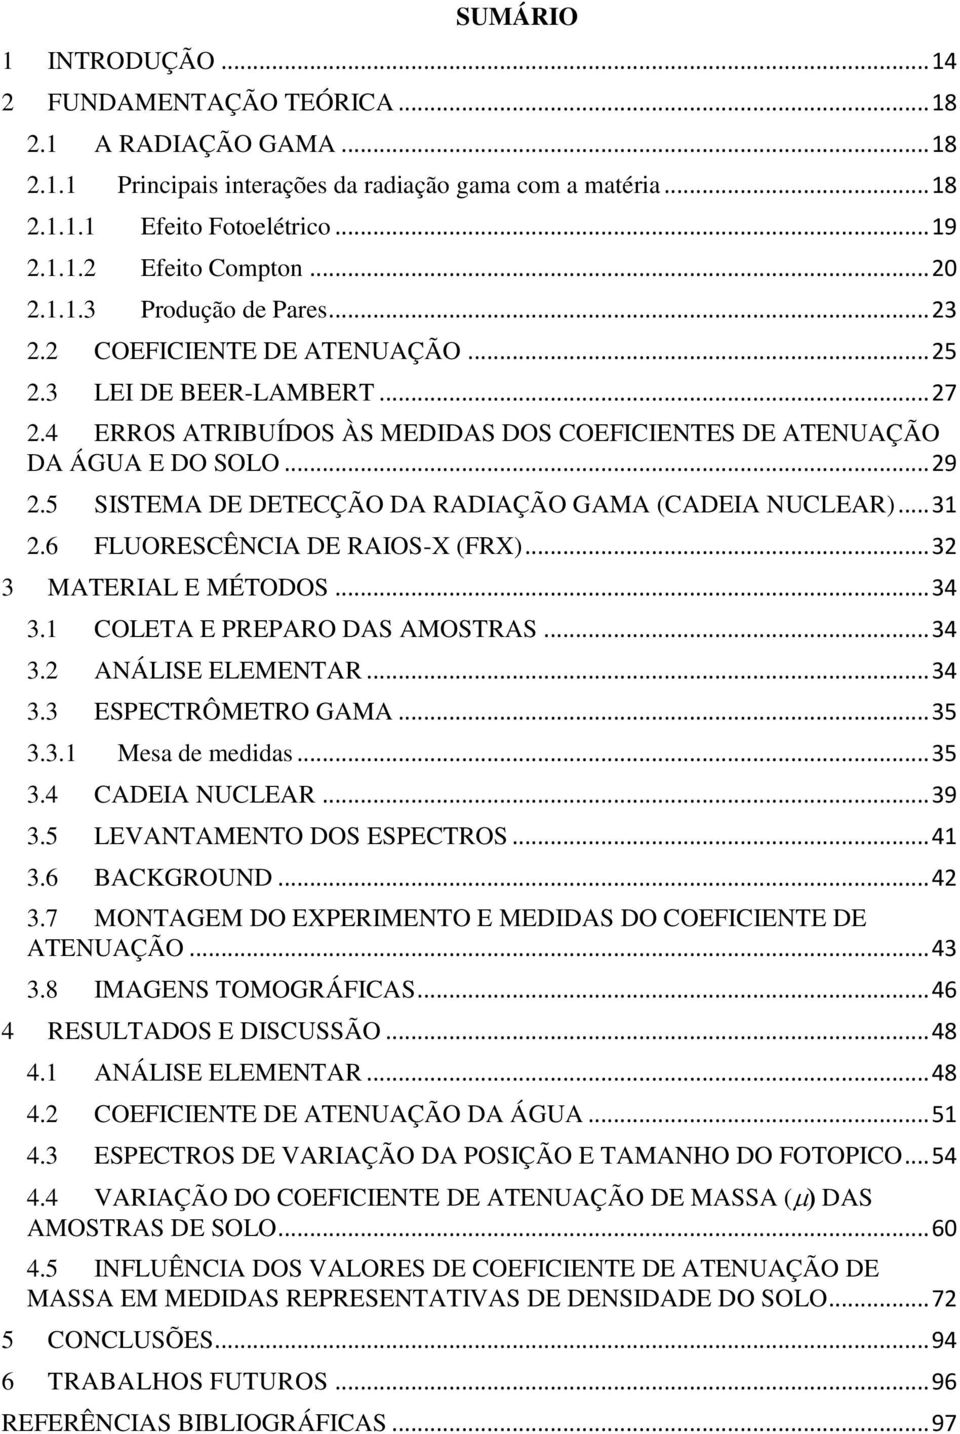 5 SISTEMA DE DETECÇÃO DA RADIAÇÃO GAMA (CADEIA NUCLEAR)... 31 2.6 FLUORESCÊNCIA DE RAIOS-X (FRX)... 32 3 MATERIAL E MÉTODOS... 34 3.1 COLETA E PREPARO DAS AMOSTRAS... 34 3.2 ANÁLISE ELEMENTAR... 34 3.3 ESPECTRÔMETRO GAMA.